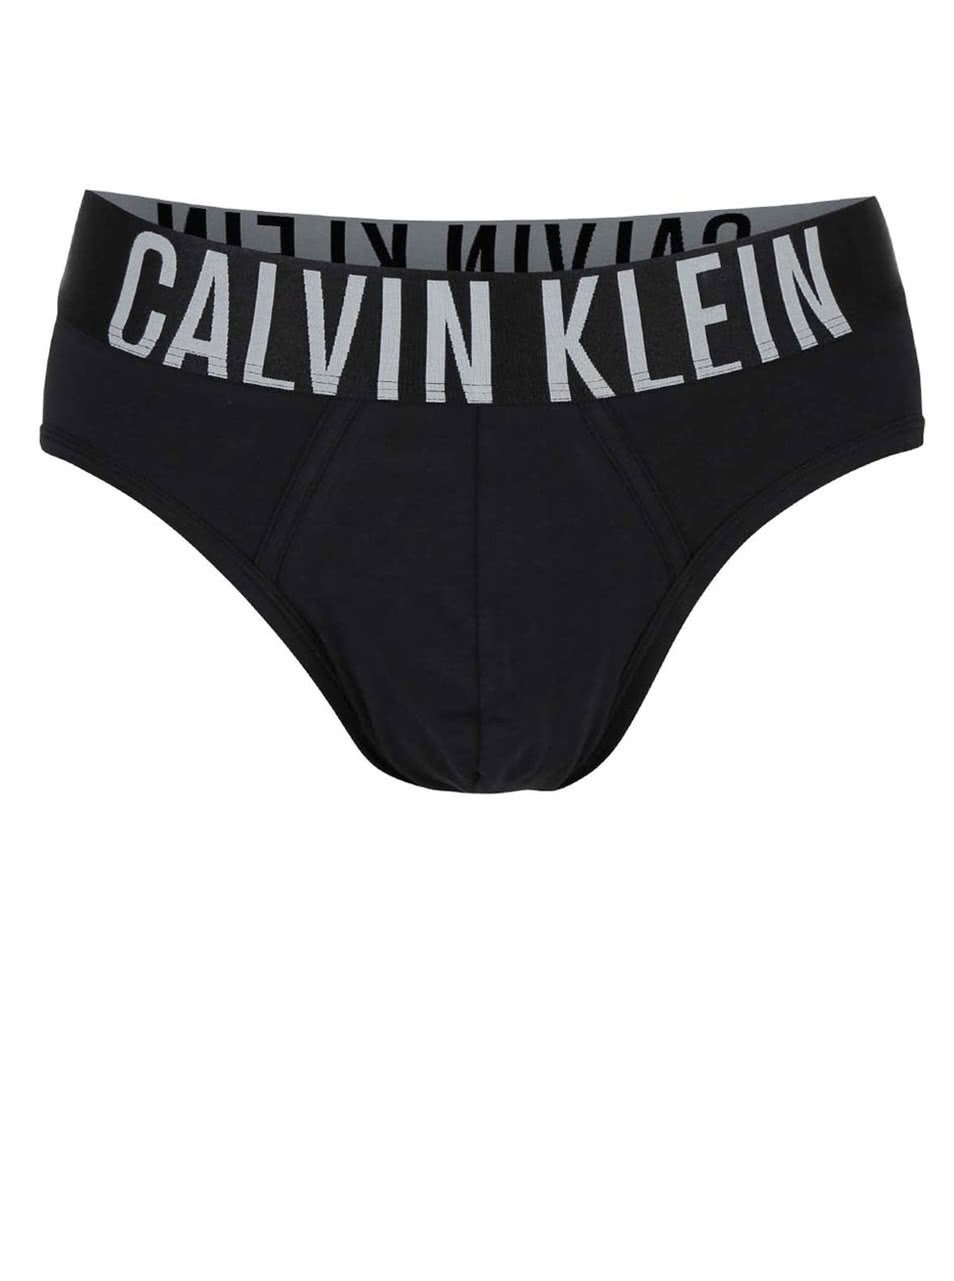 Černé slipy s širokým pasem Calvin Klein